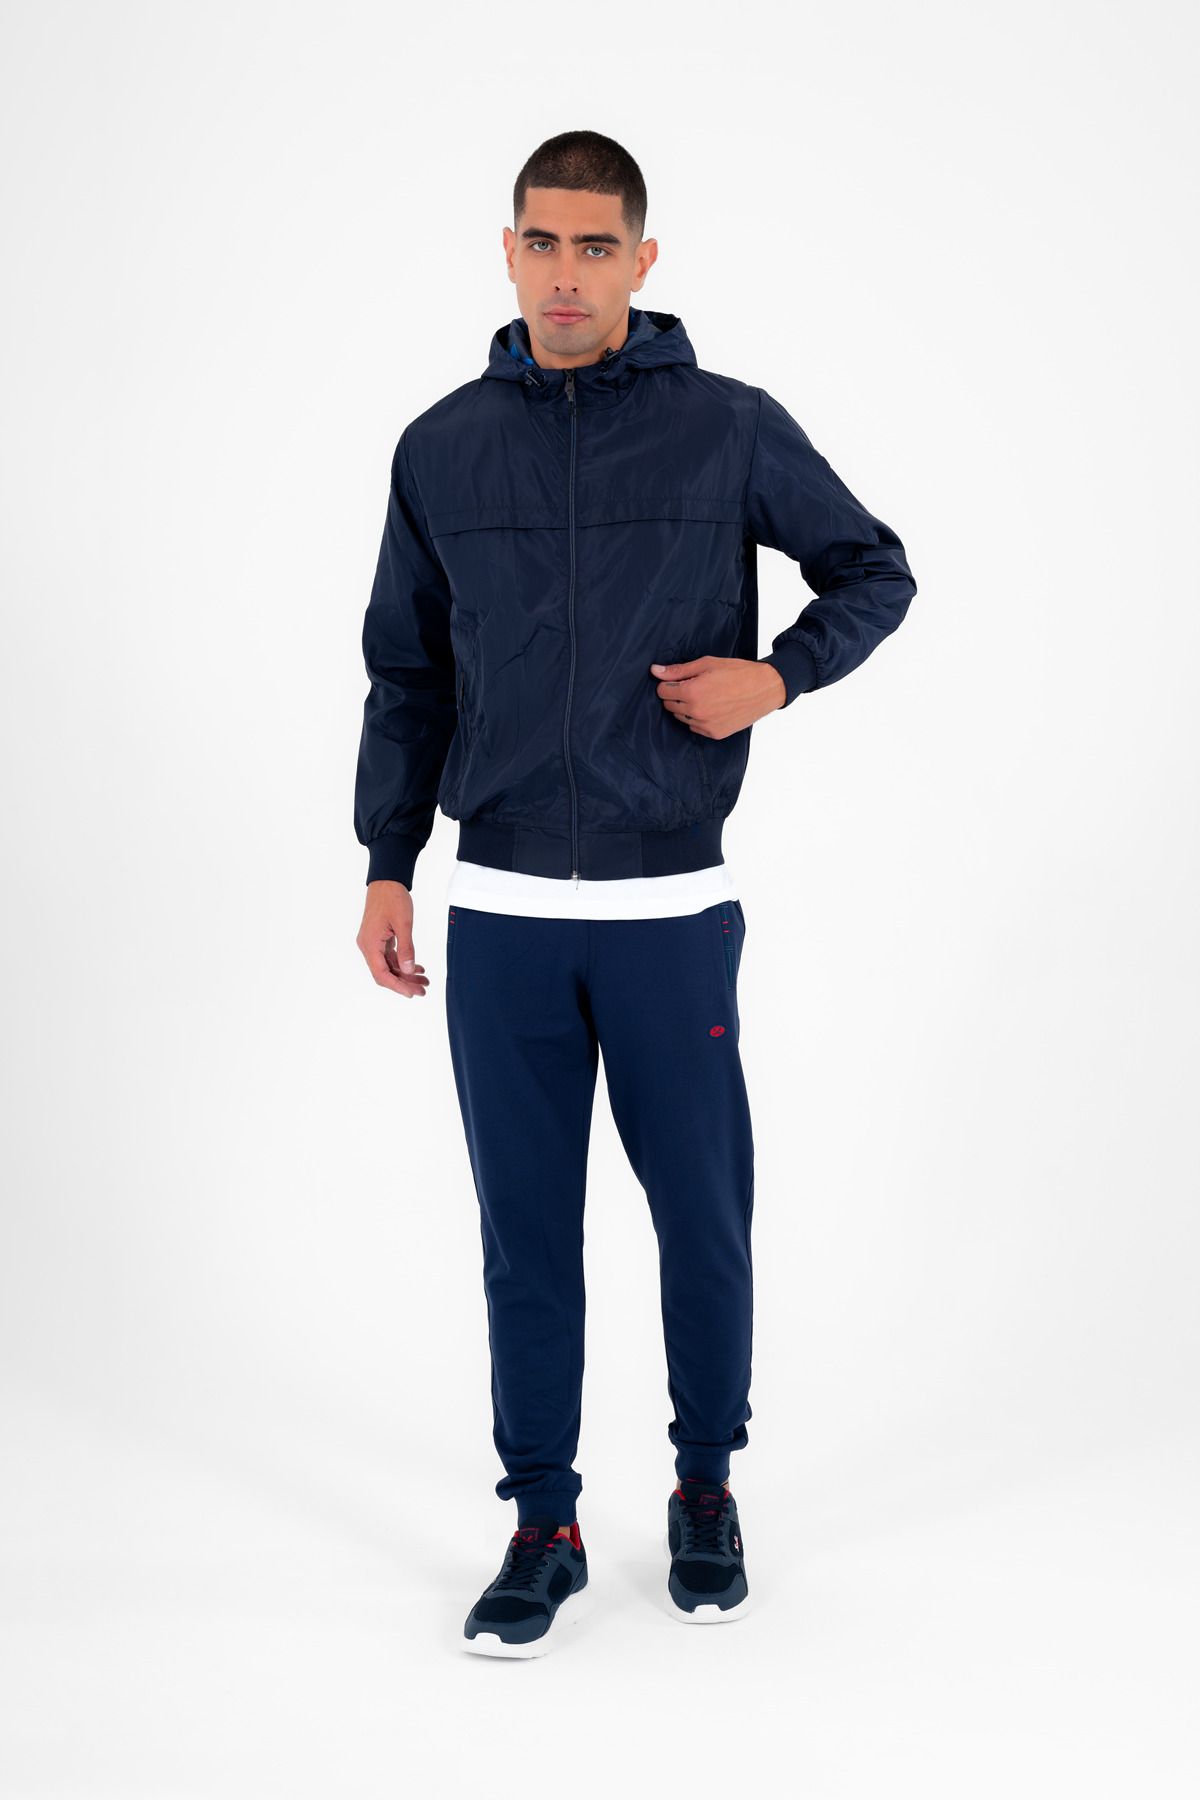 Escetic темно-синяя мужская ветровка с жестким капюшоном и узорной подкладкой, водоотталкивающая сезонная тонкая куртка 6569 CC-6569